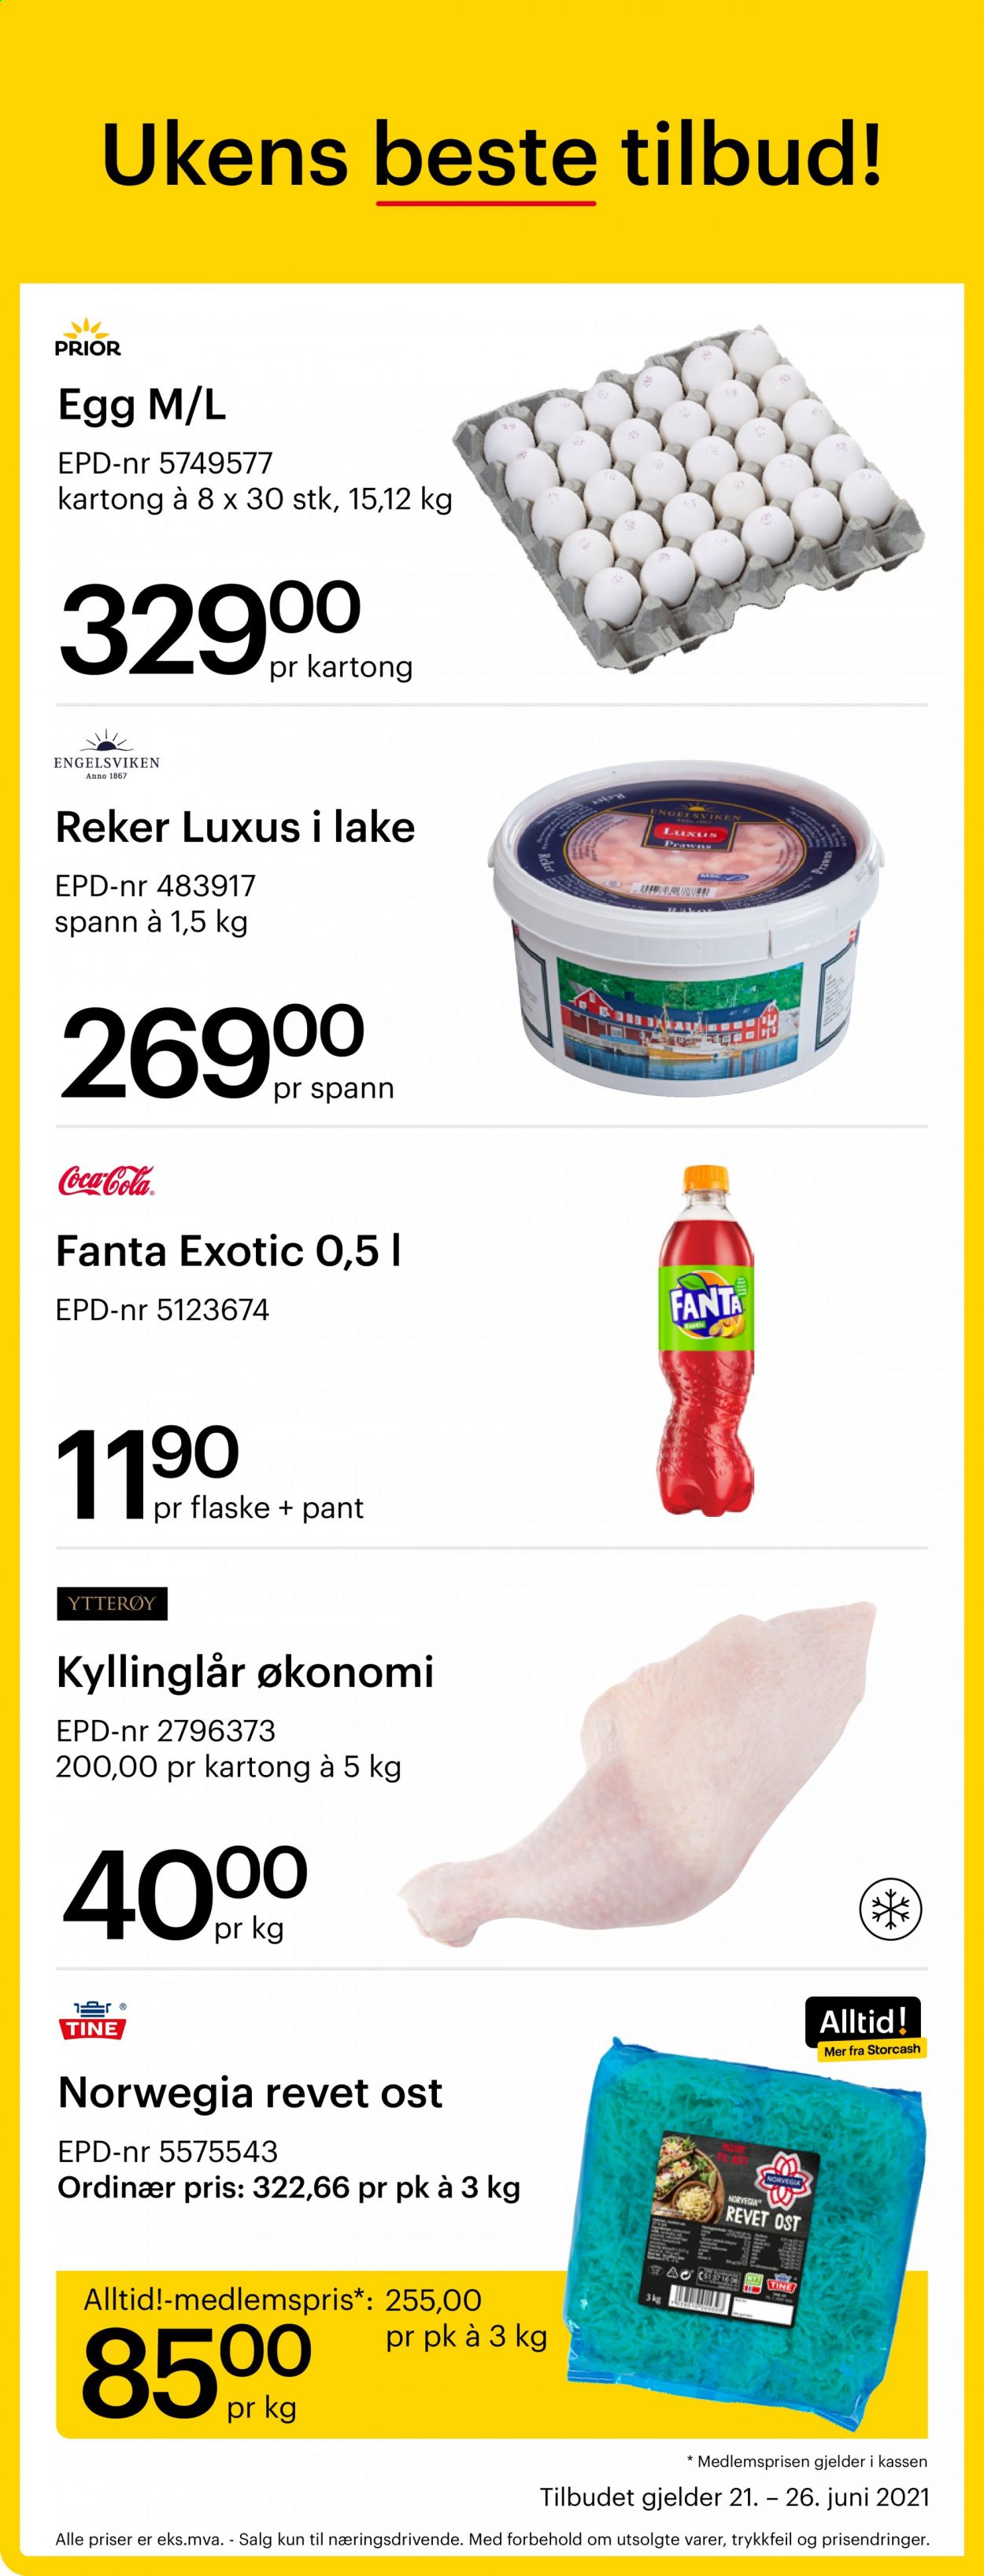 thumbnail - Kundeavis Storcash - 21.6.2021 - 26.6.2021 - Produkter fra tilbudsaviser - kyllinglår, kyllingkjøtt, reker, Norvegia, ost, egg, Fanta, Coca-Cola. Side 1.